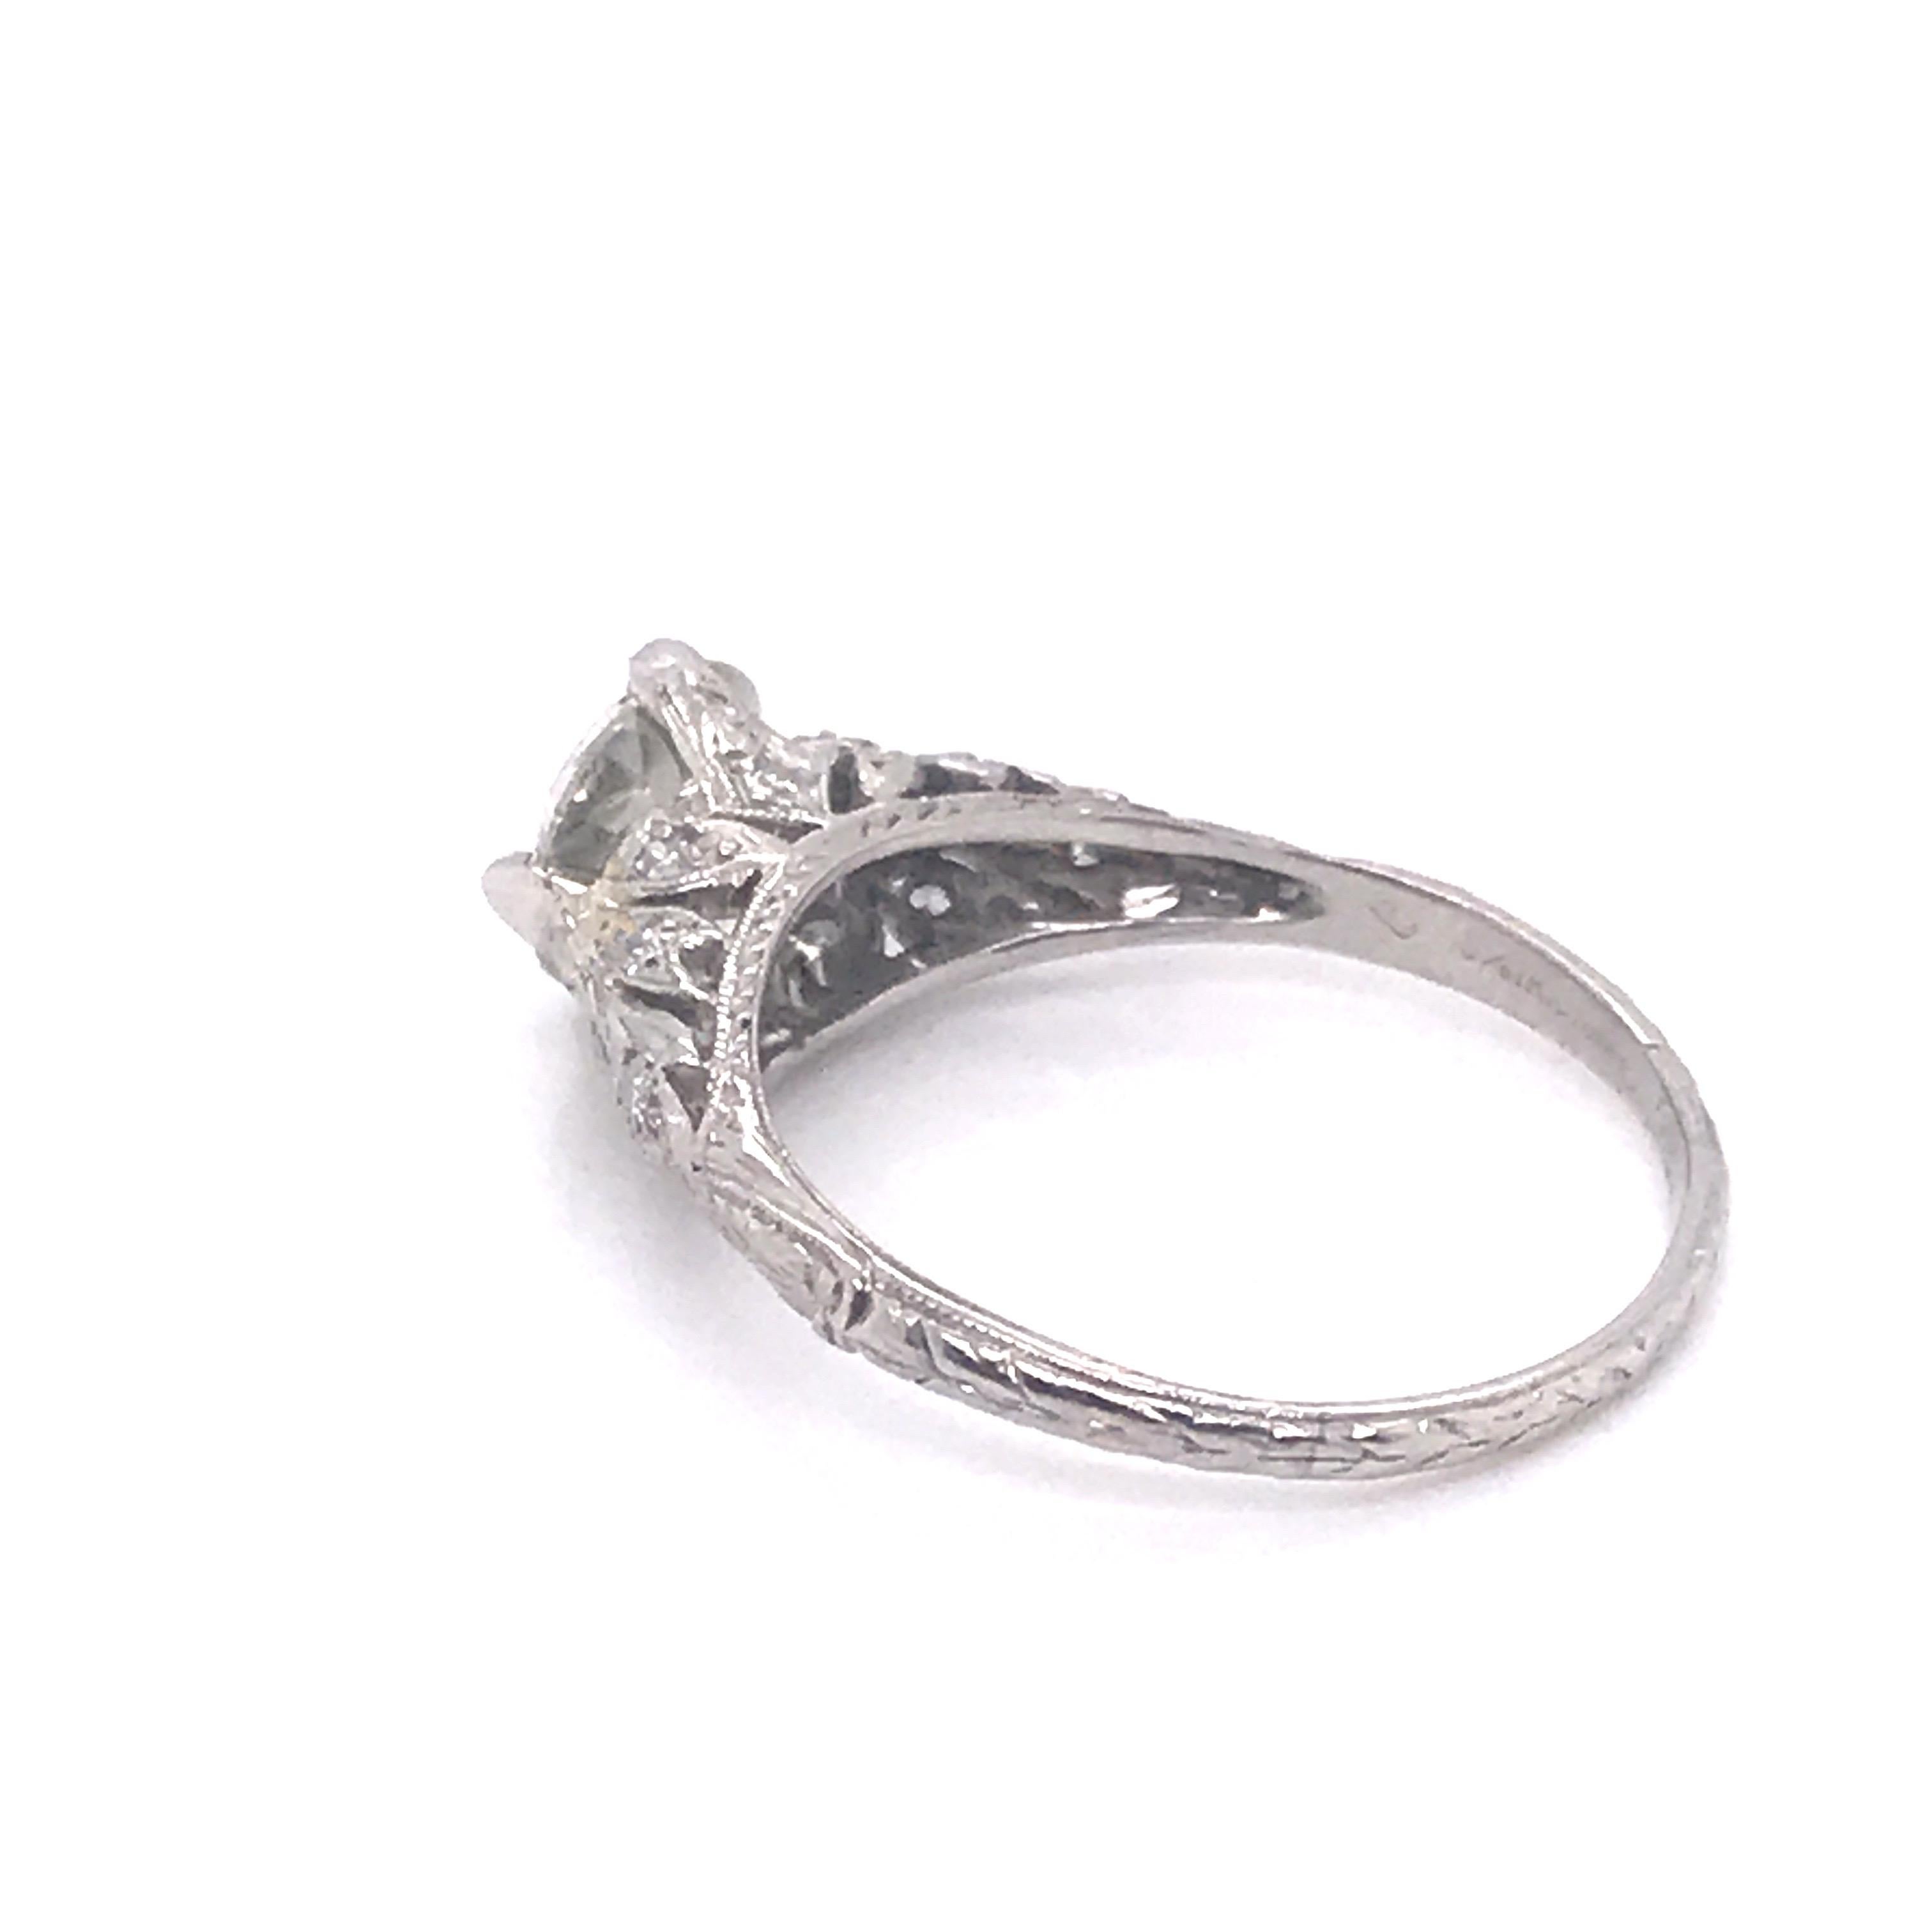 Edwardian Era 1.5 Carat Diamond Solitaire Filigree Engagement Ring at ...